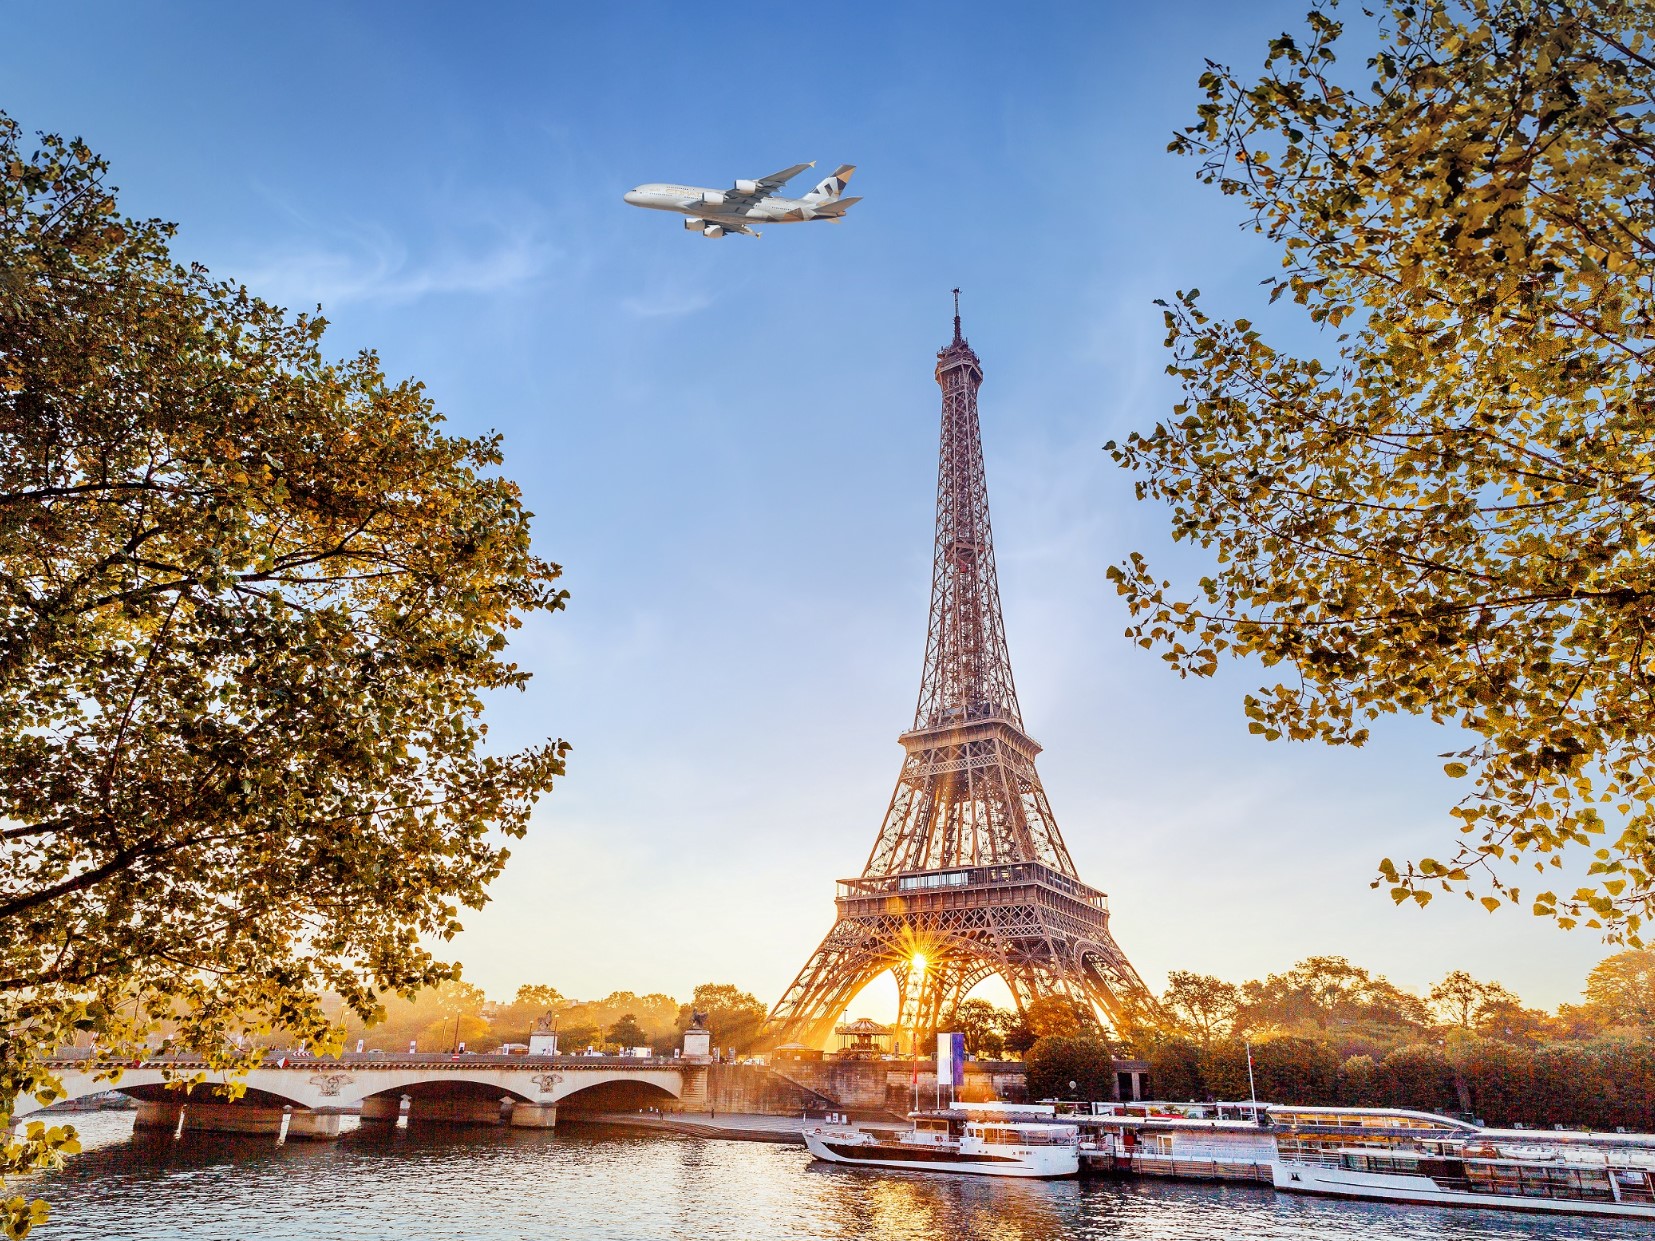 阿提哈德航空A380首航巴黎 带来奢华空中旅行新体验